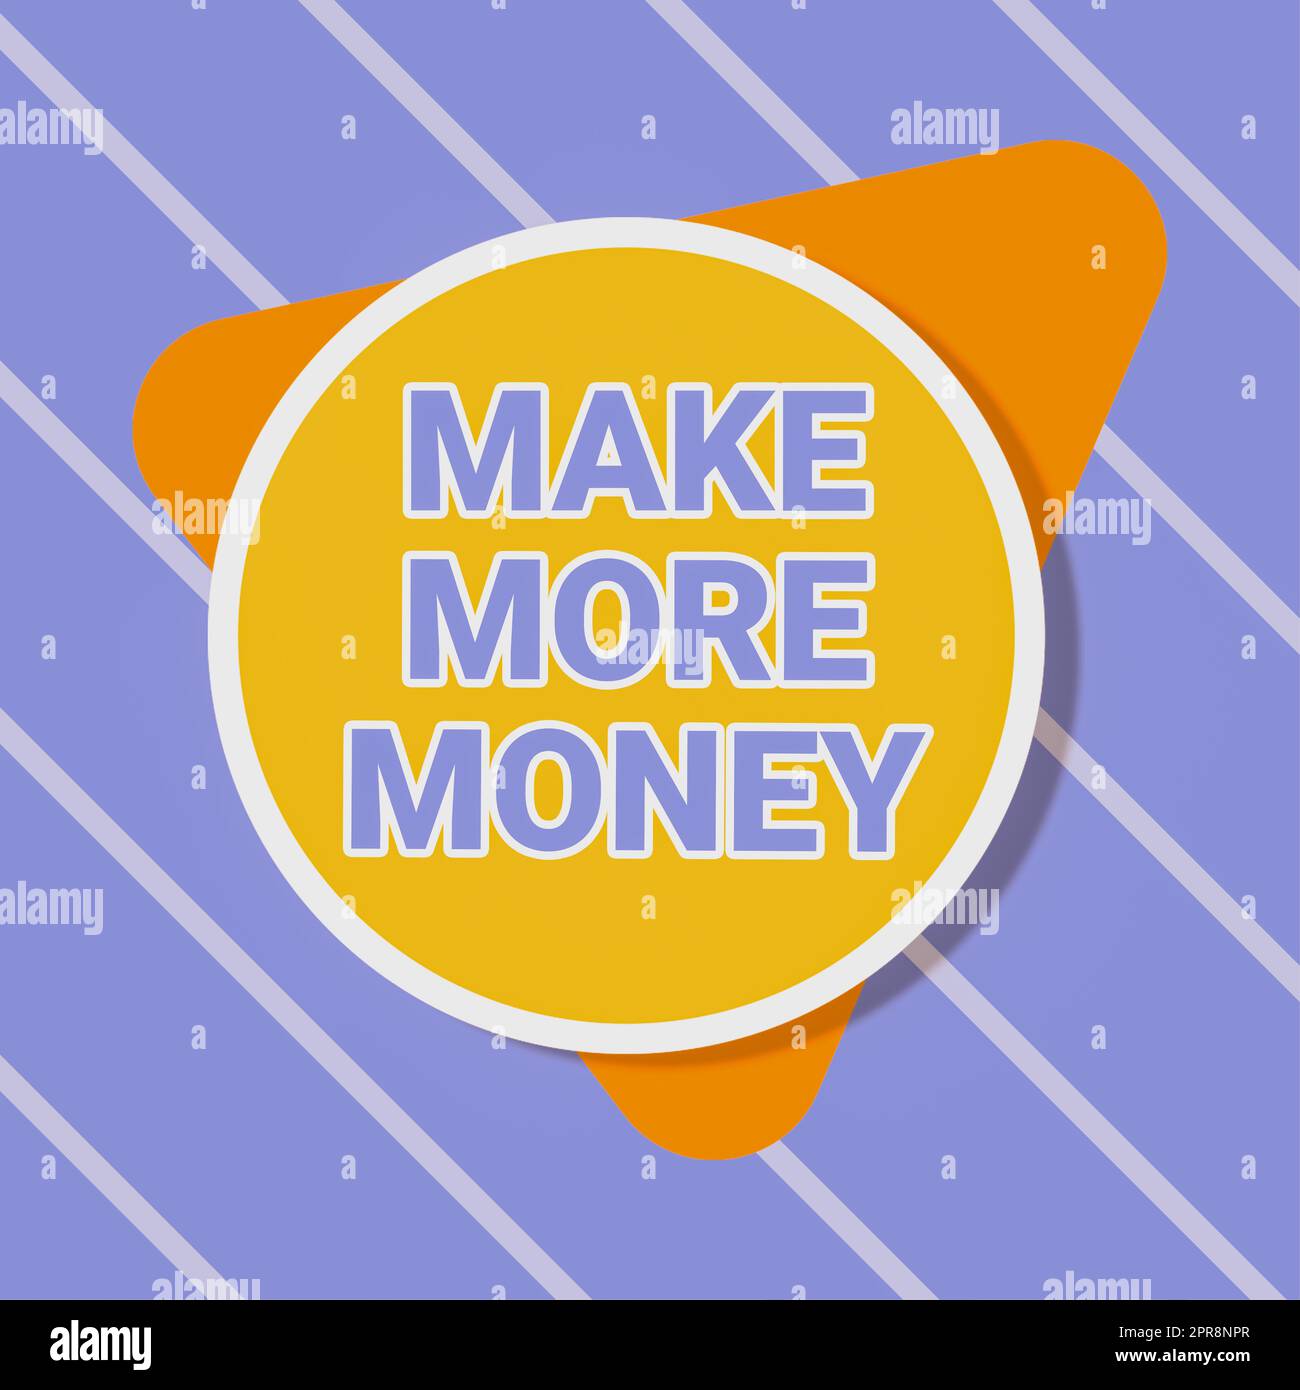 Schild mit der Aufschrift „Make More Money“. Business Showcase Erhöhen Sie Ihr Einkommen Gehaltsleistungen arbeiten härter Ambition Blank Circular und Triangle Shapes for Promotion of Business. Stockfoto